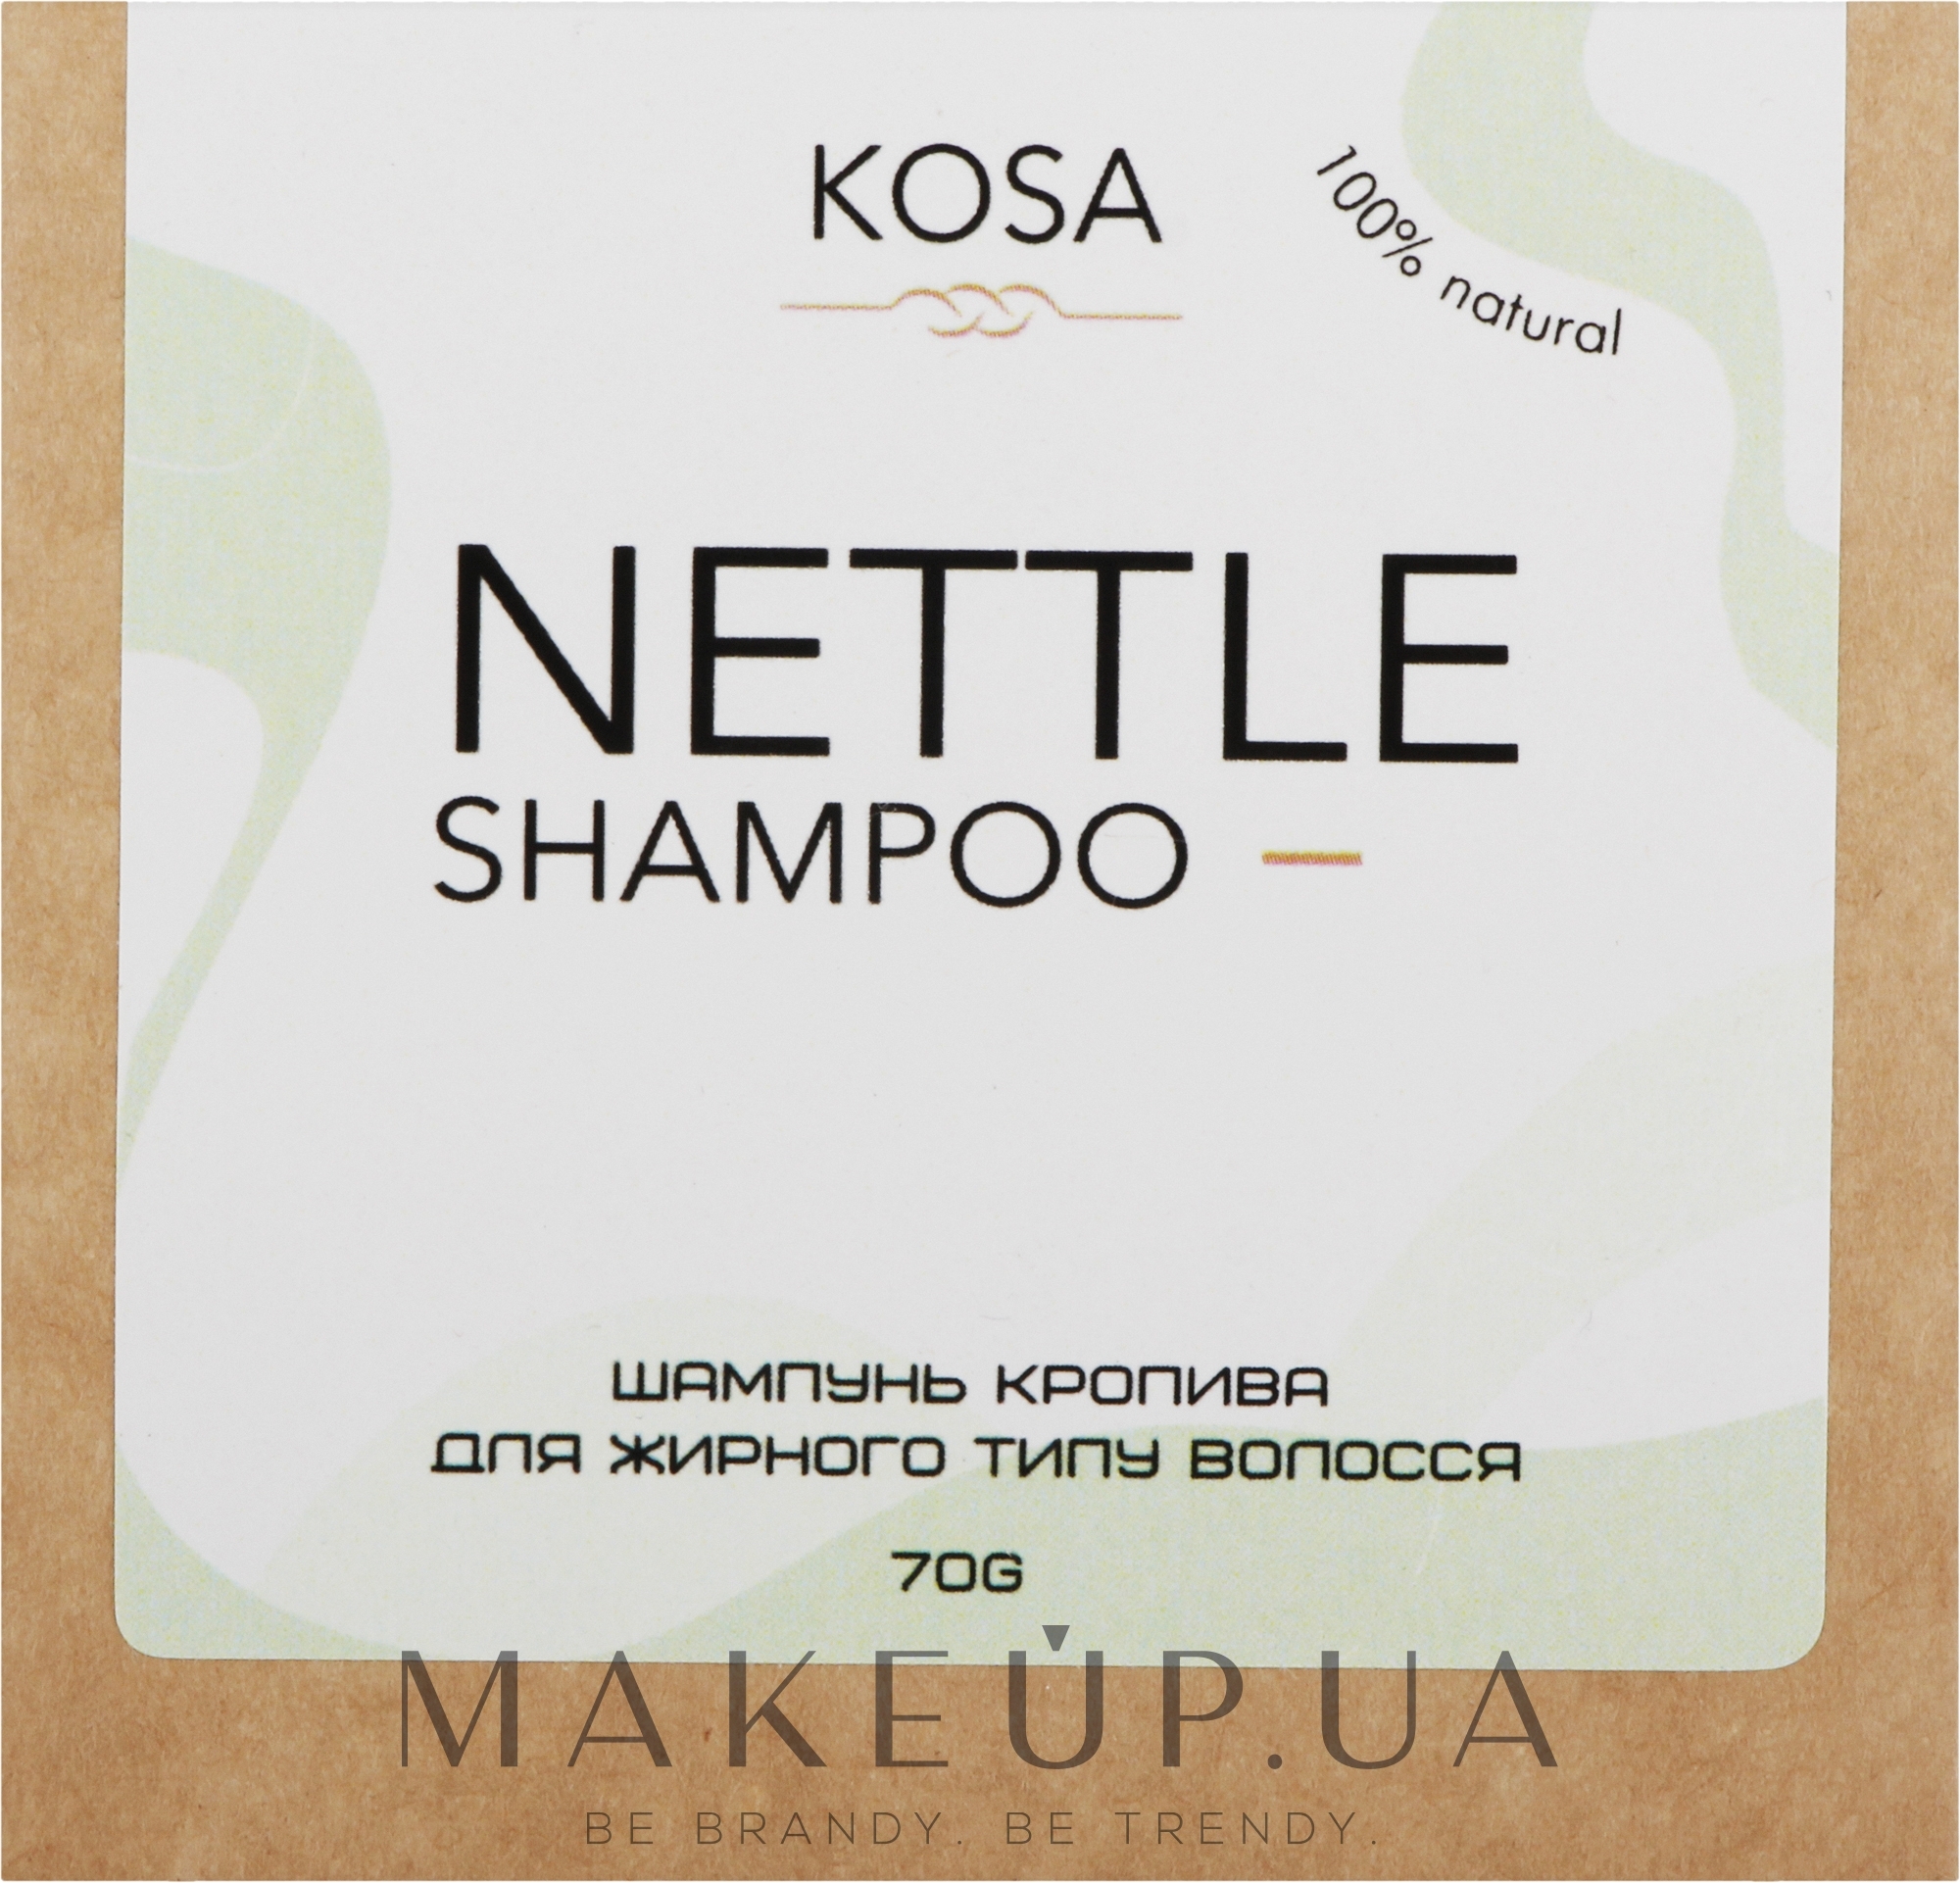 Твердий шампунь для жирного волосся "Кропива" - Kosa Nettle Shampoo — фото 70g